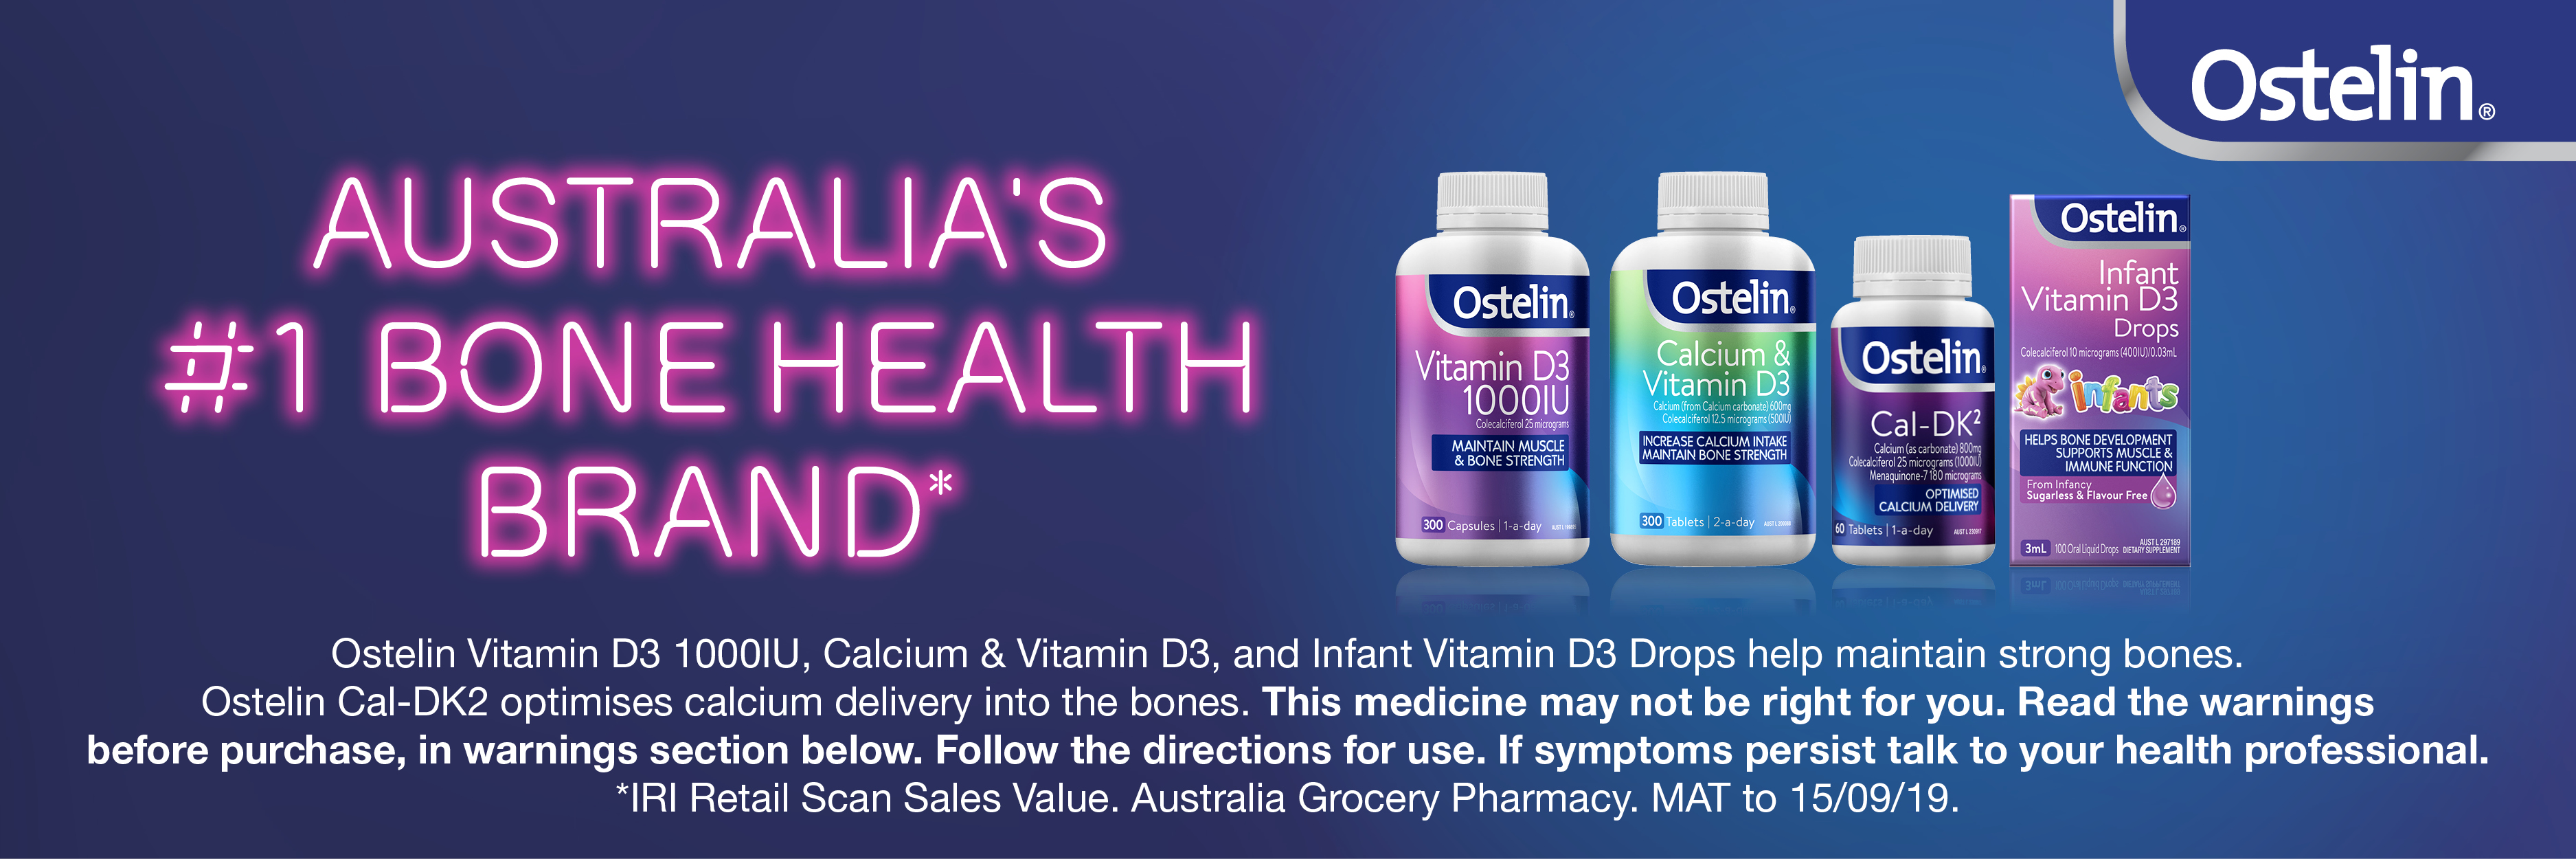 [Hàng chuẩn Úc] Viên uống bổ sung canxi và vitamin d3 cho người lớn, trẻ em trên 12 tuổi và bà bầu Ostelin calcium & vitamin D3 130 viên - 300 viên của Úc